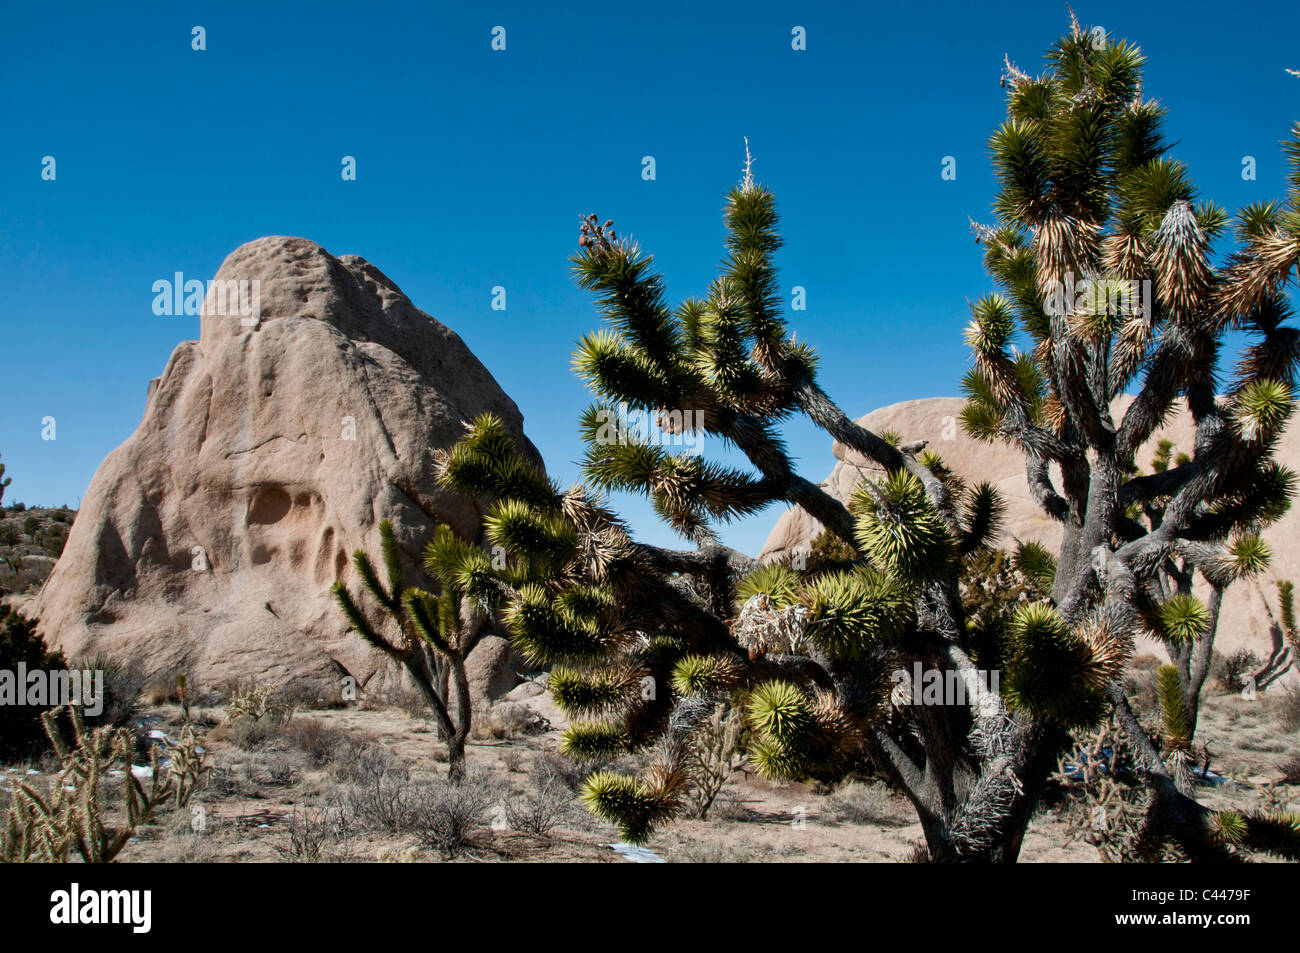 Mojave National Preserve, Californie, mars, USA, Amérique, Joshua trees, paysage, rochers, arbres, ciel bleu Banque D'Images